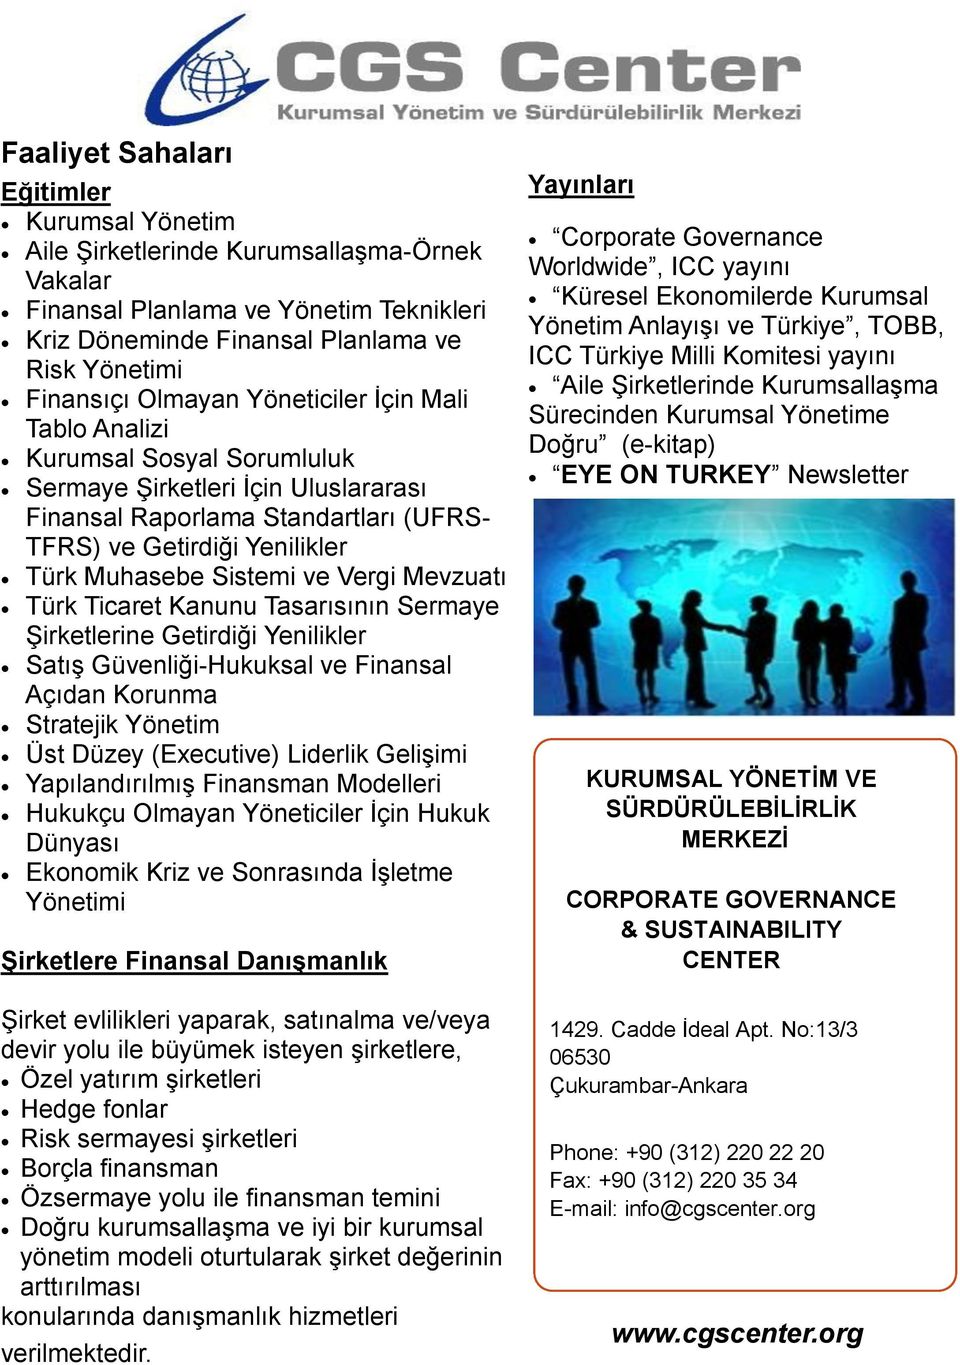 Mevzuatı Türk Ticaret Kanunu Tasarısının Sermaye Şirketlerine Getirdiği Yenilikler Satış Güvenliği-Hukuksal ve Finansal Açıdan Korunma Stratejik Yönetim Üst Düzey (Executive) Liderlik Gelişimi